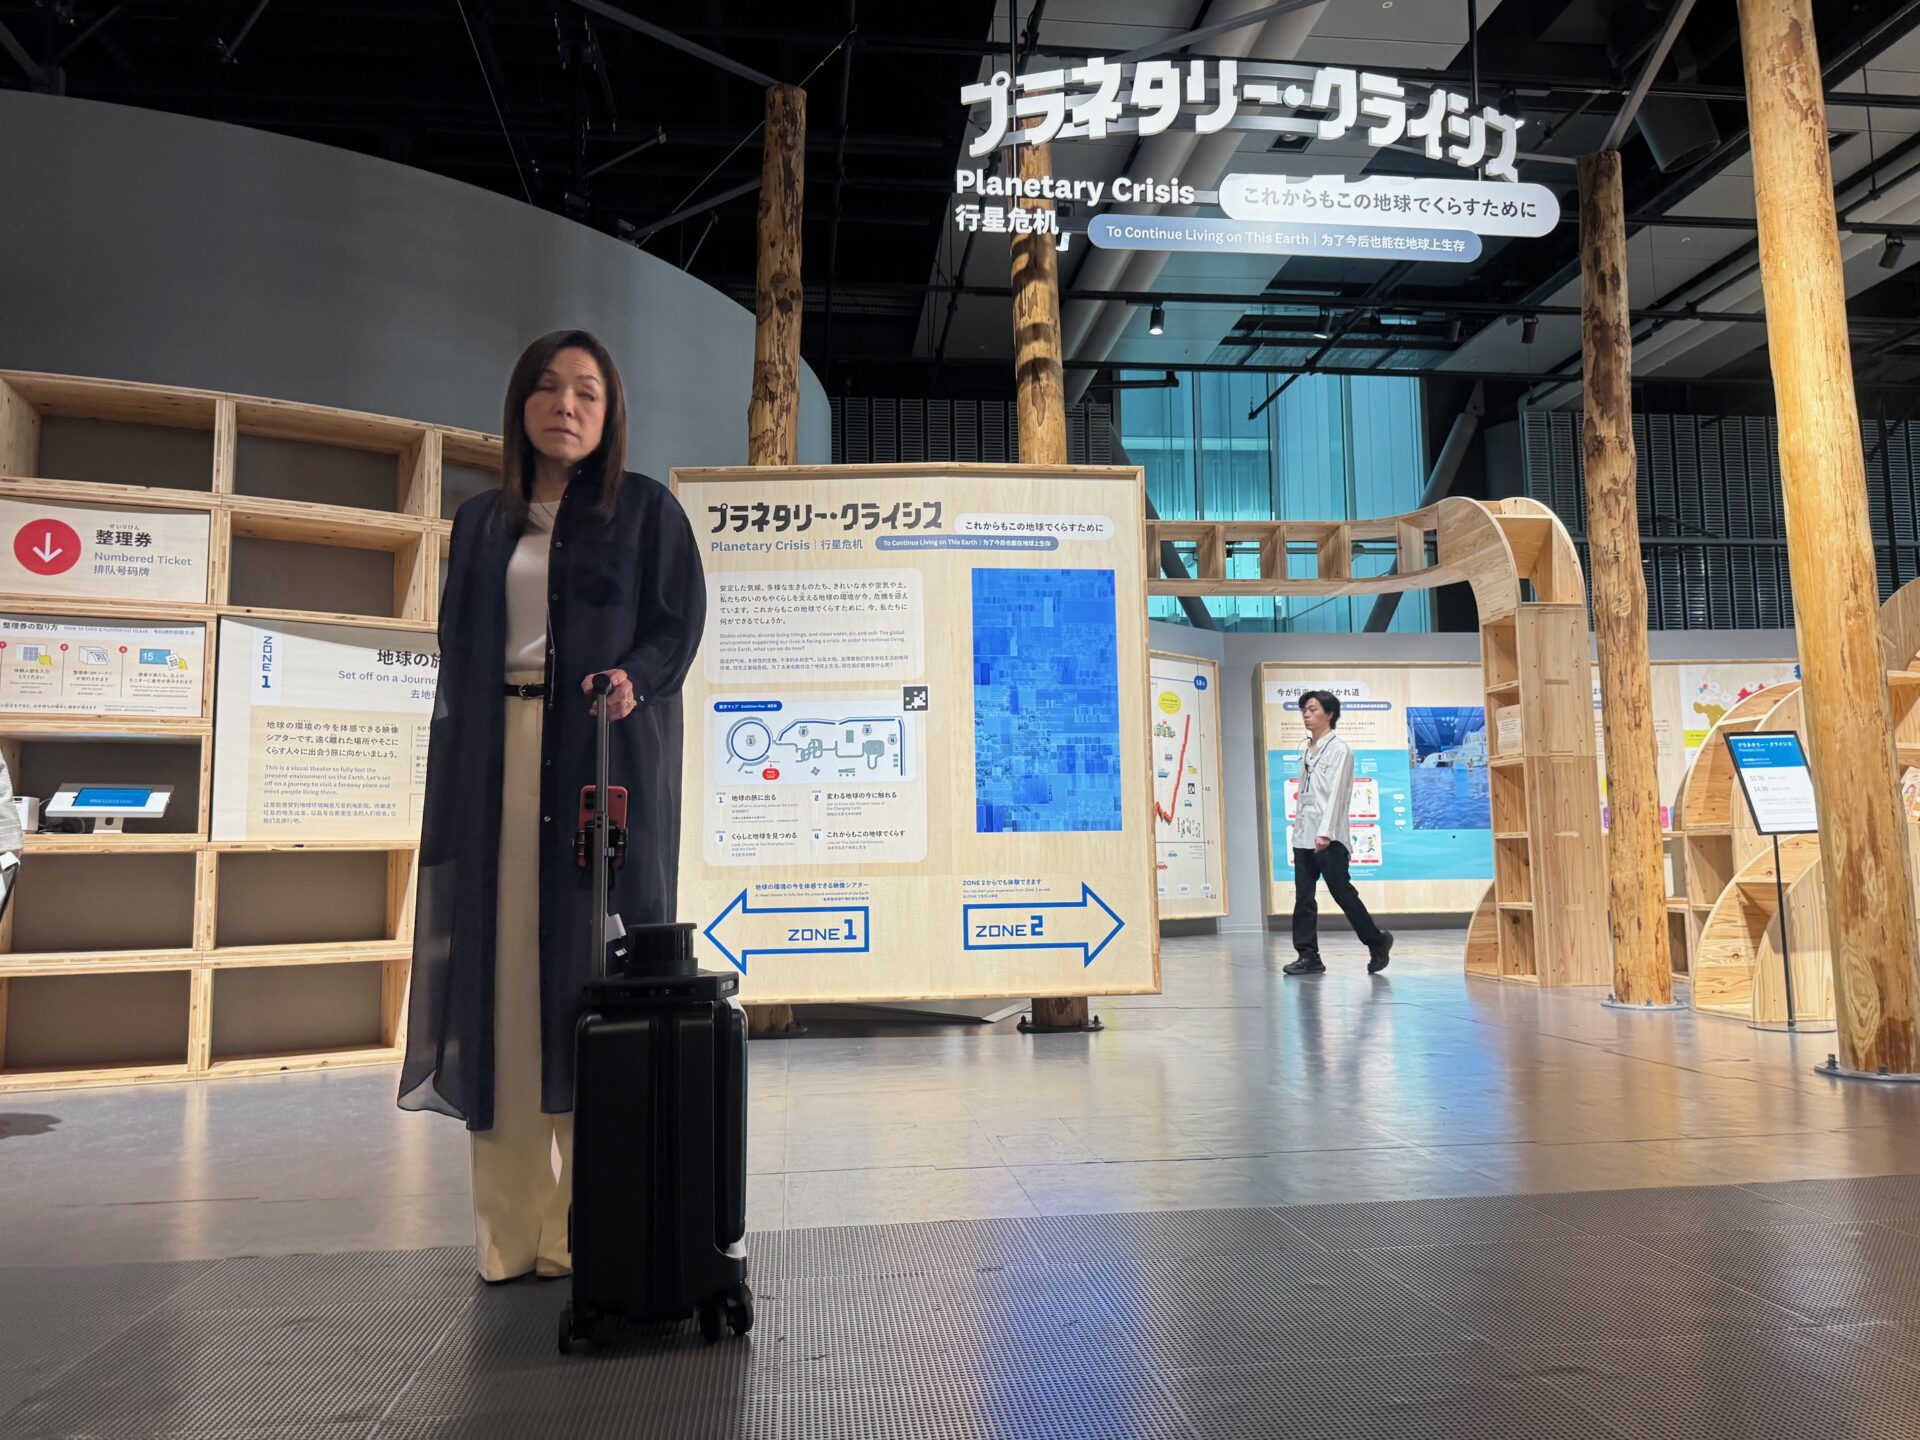 にっぽん科学未来館5階の常設展示のプラネタリー・クライシスの前で、エーアイスーツケースを持つ館長のあさかわ智恵子氏